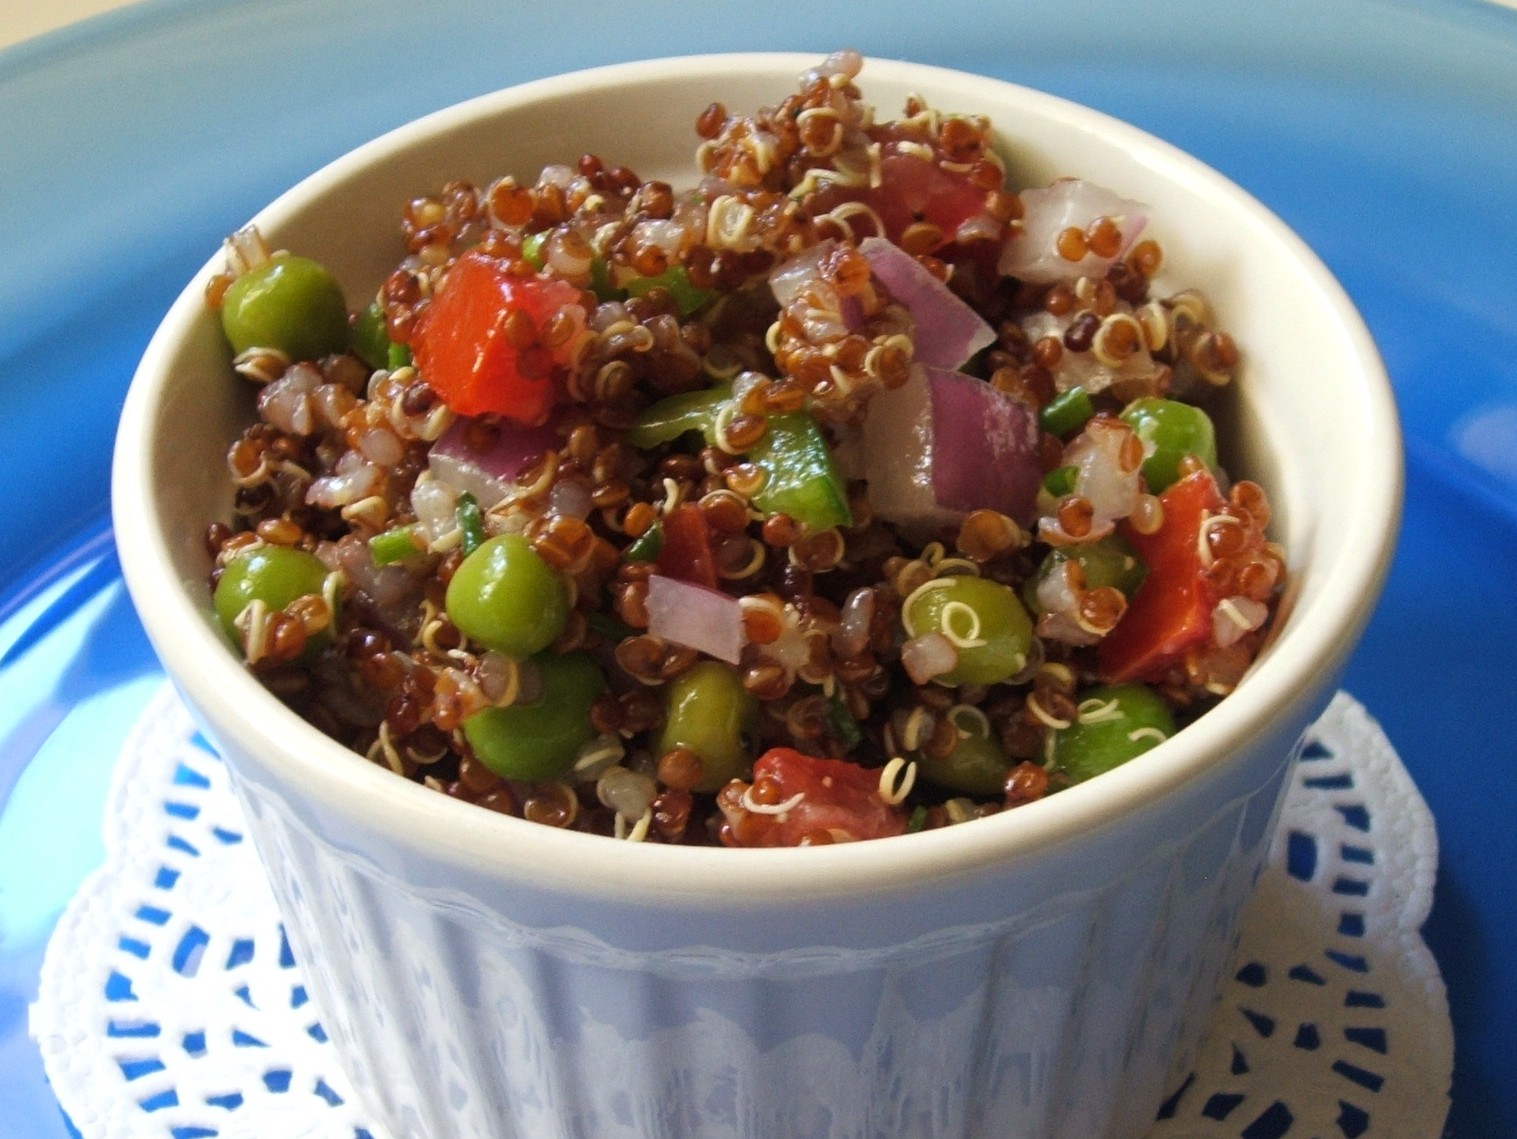 red quinoa salad with lemon vinaigrette